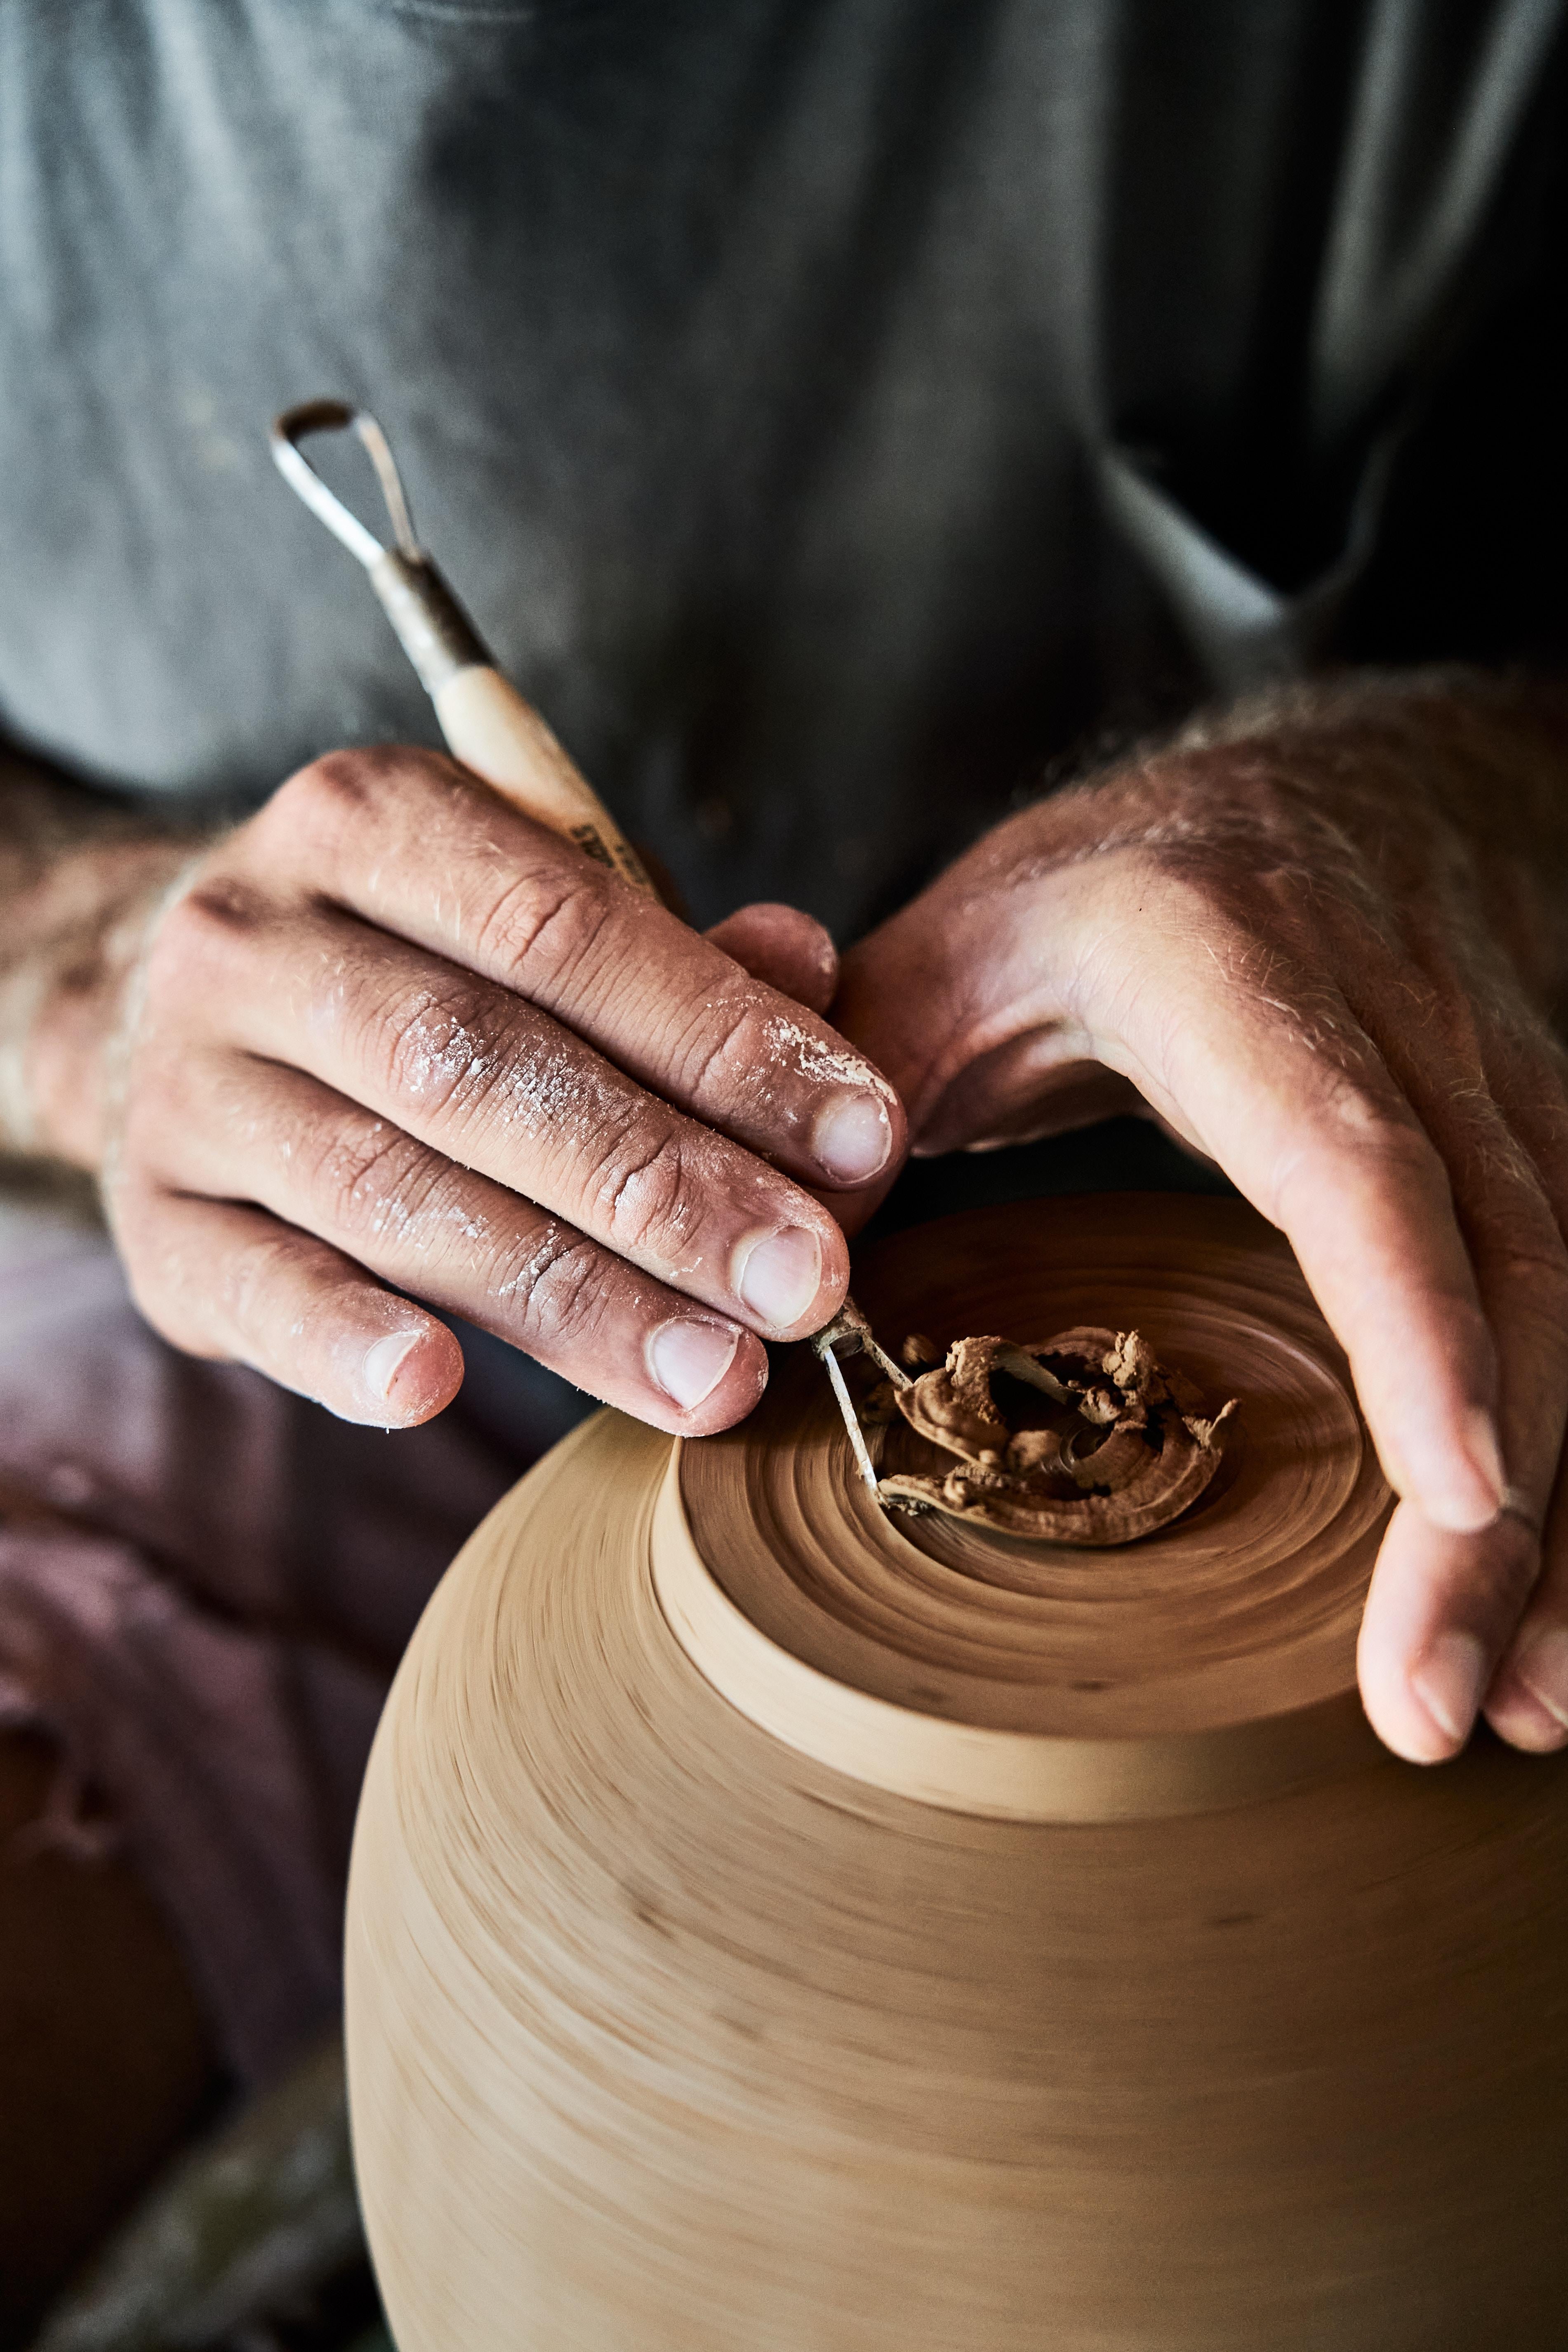 Glazed Skoby Joe Textured Ceramic Vase Mid-Century Modern Vessel Wabi Sabi